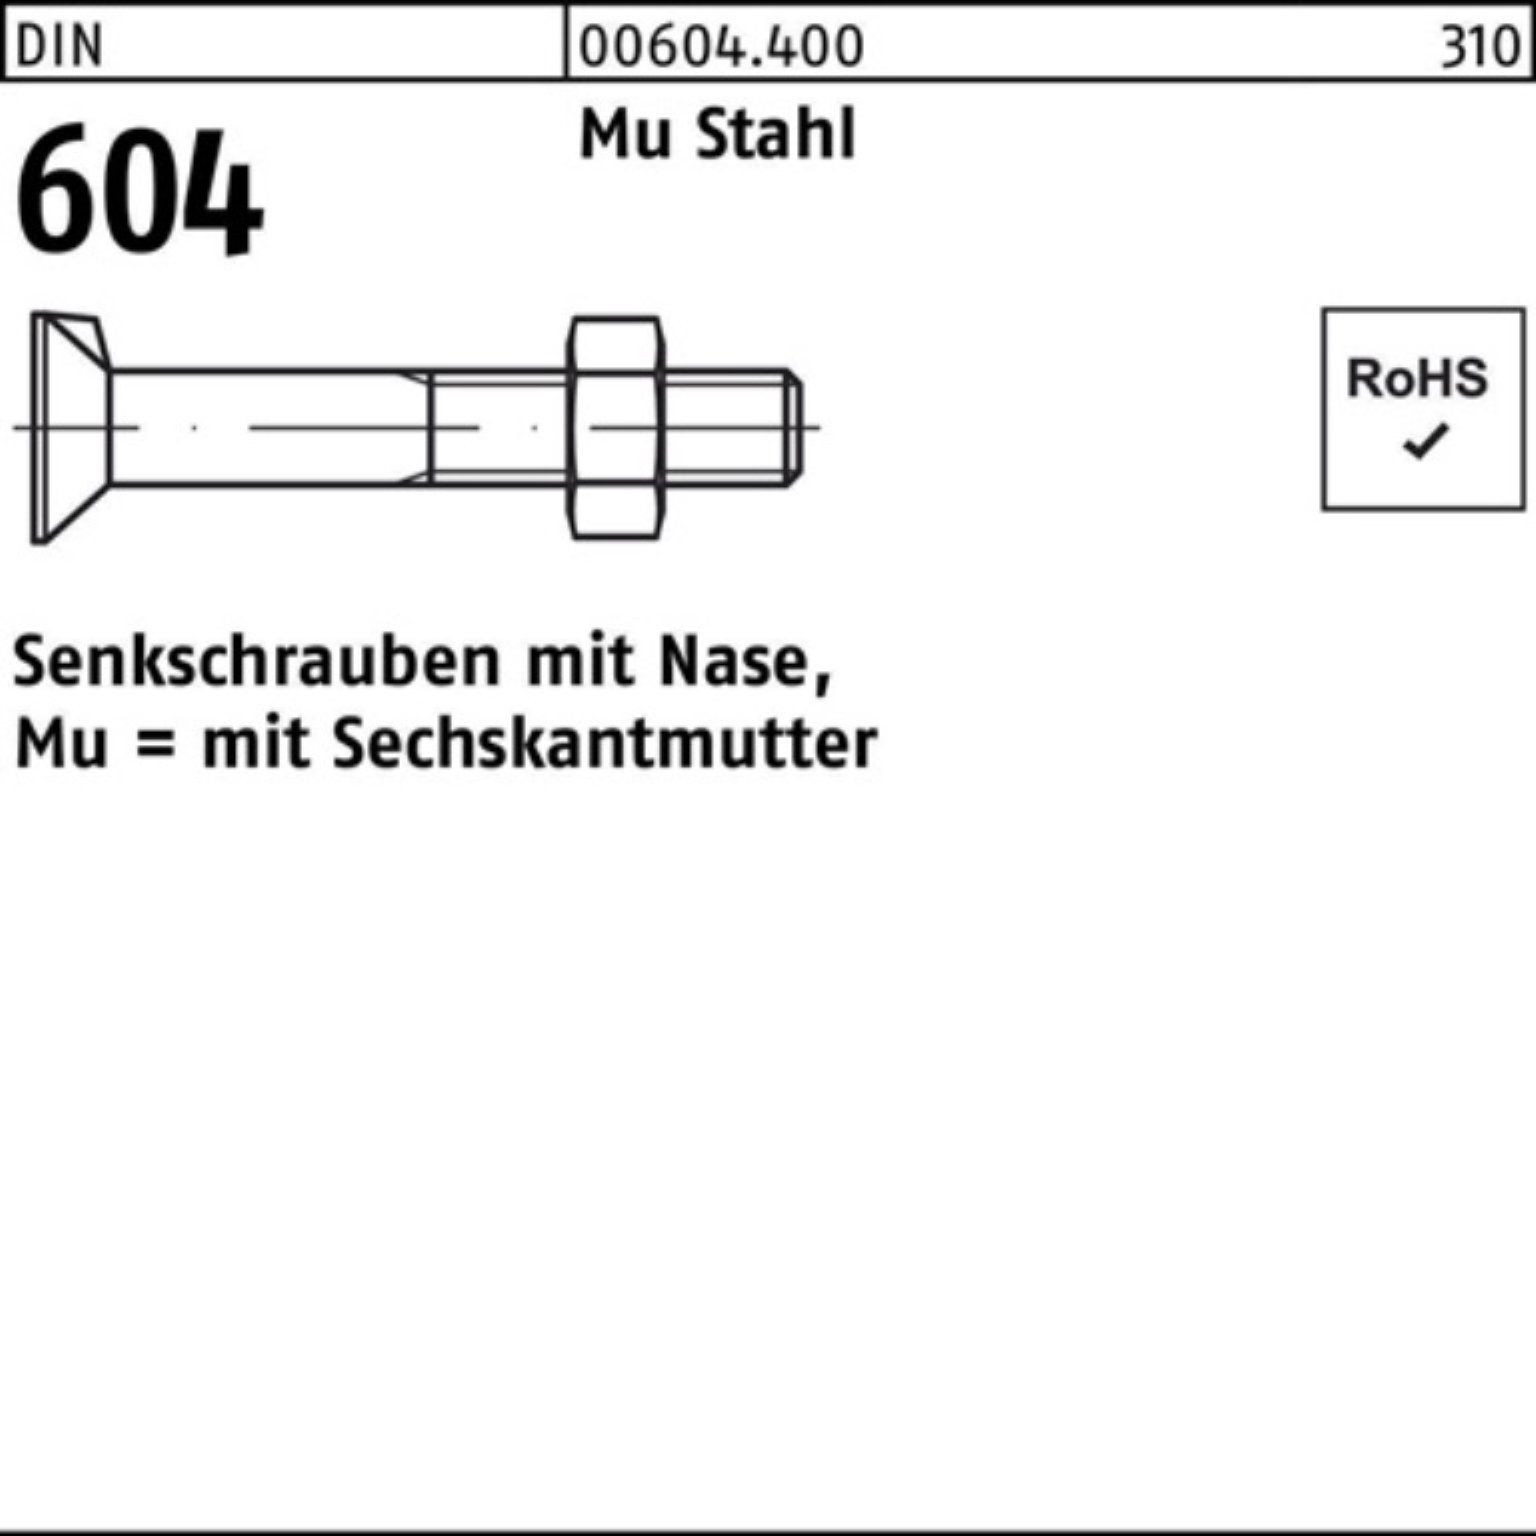 Reyher Senkschraube 100er Pack Senkschraube DIN 604 Nase/6-ktmutter M12x 65 Mu Stahl 4.6 5